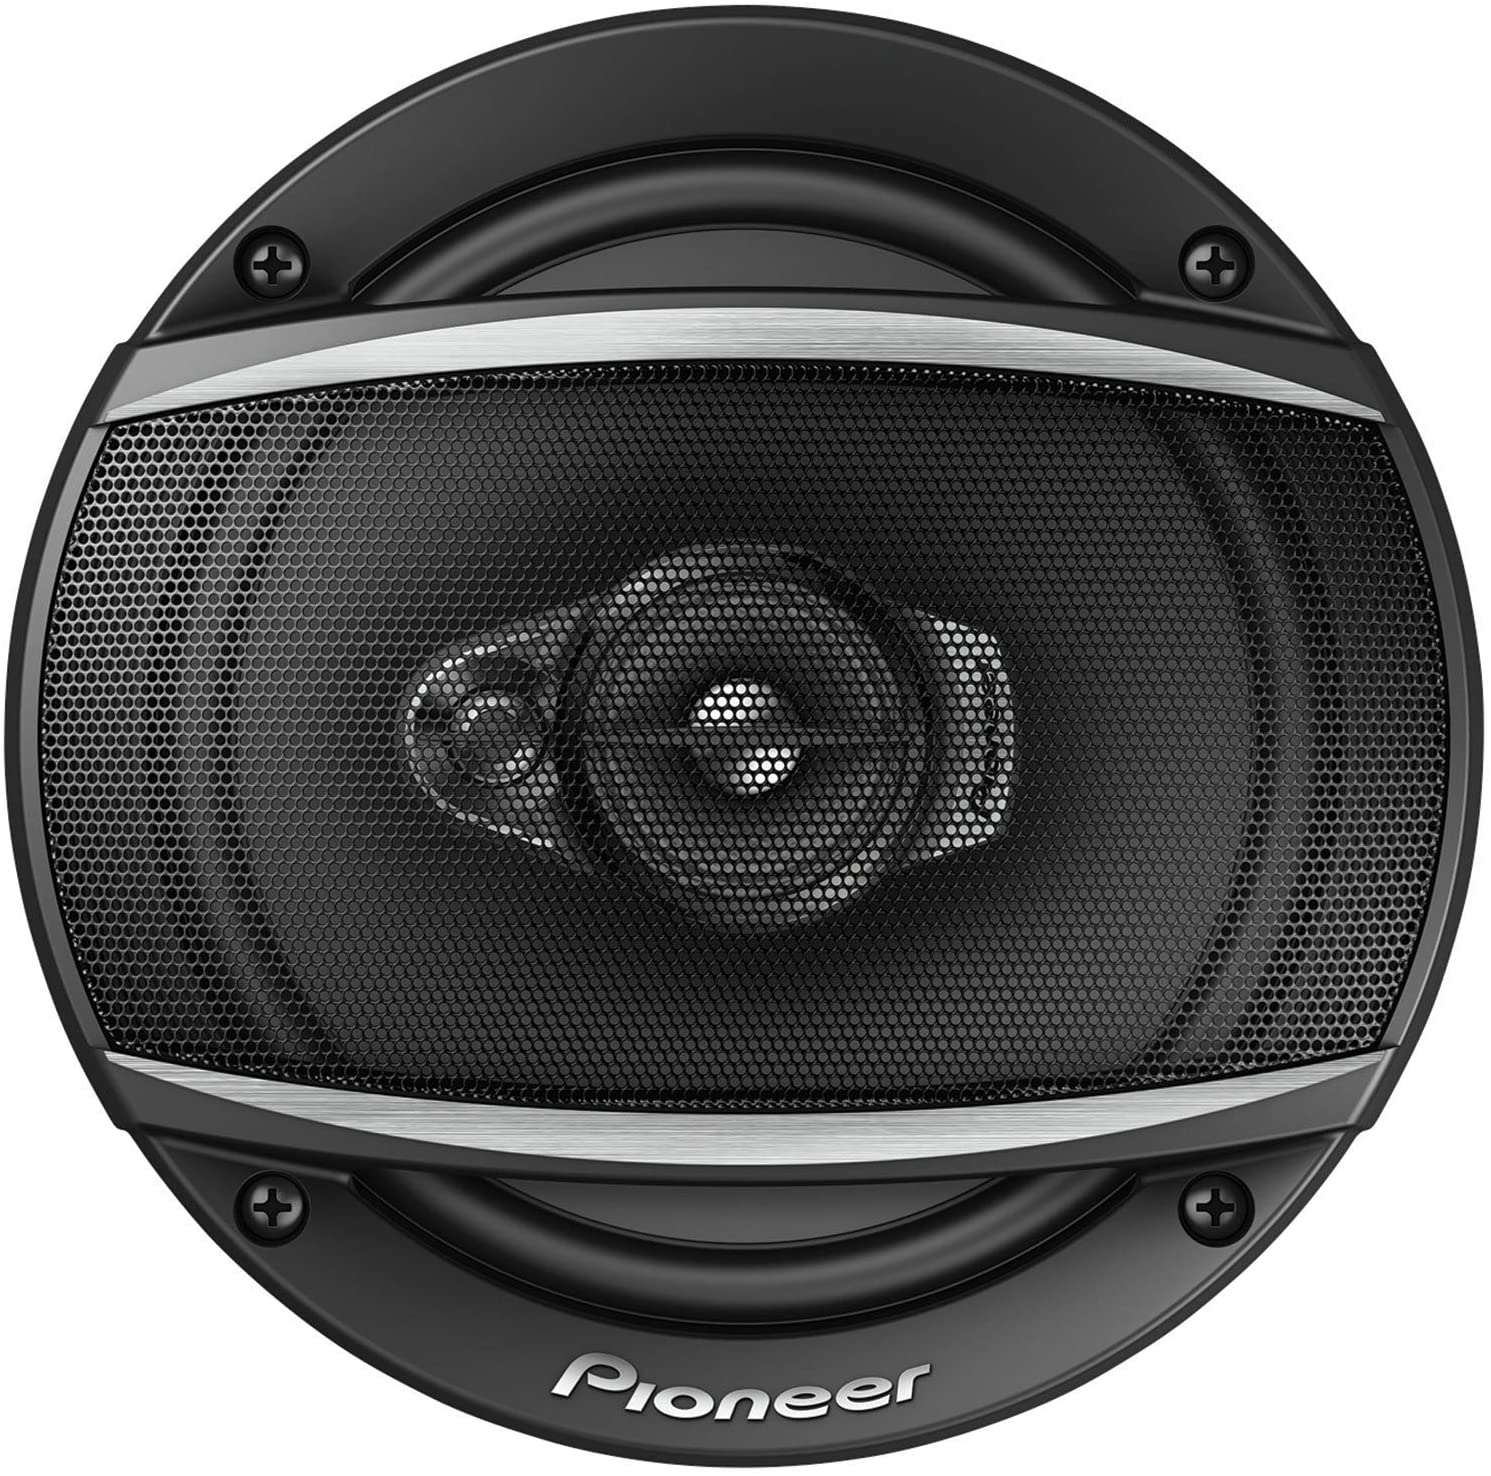 Pioneer TS-A1670F Car speakers Best 3 Way Speakers Car Audio